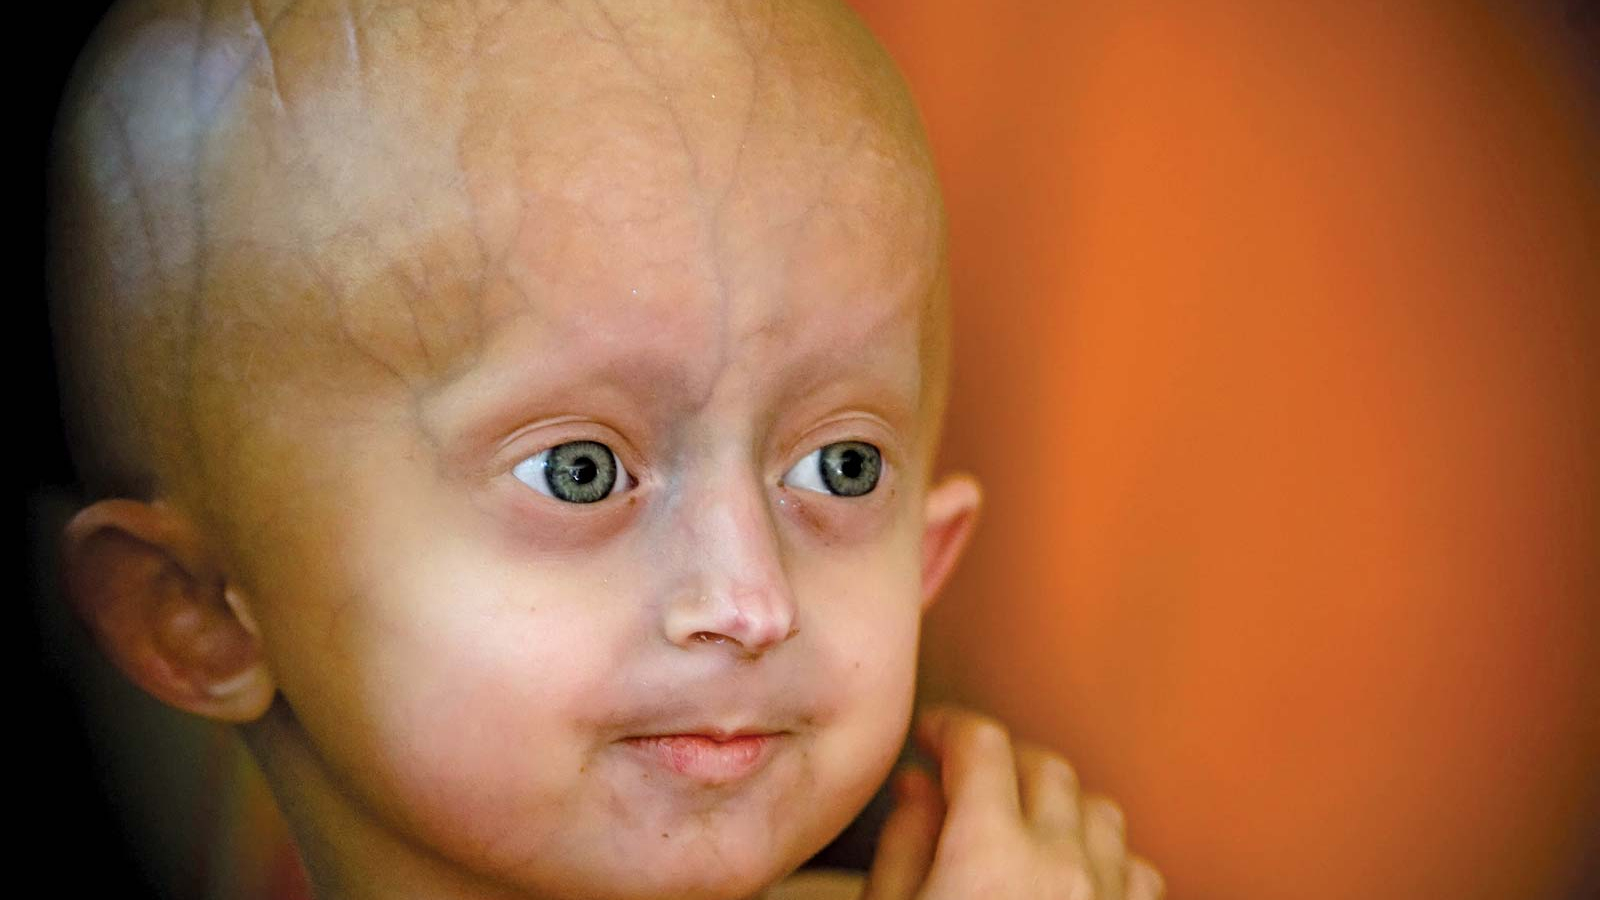 Progeria (pro-JEER-e-uh) یا پروجریا که همچنین به عنوان سندرم هاچینسون-گیلفورد شناخته می شود، یک اختلال ژنتیکی بسیار نادر و پیشرونده است که باعث می شود کودکان به سرعت پیر شوند و از دو سال اول زندگی شروع می شود. کودکان مبتلا به پروجریا معمولا در بدو تولد طبیعی به نظر می رسند. در طول سال اول، علائم و نشانه هایی مانند رشد آهسته و ریزش مو شروع می شود.